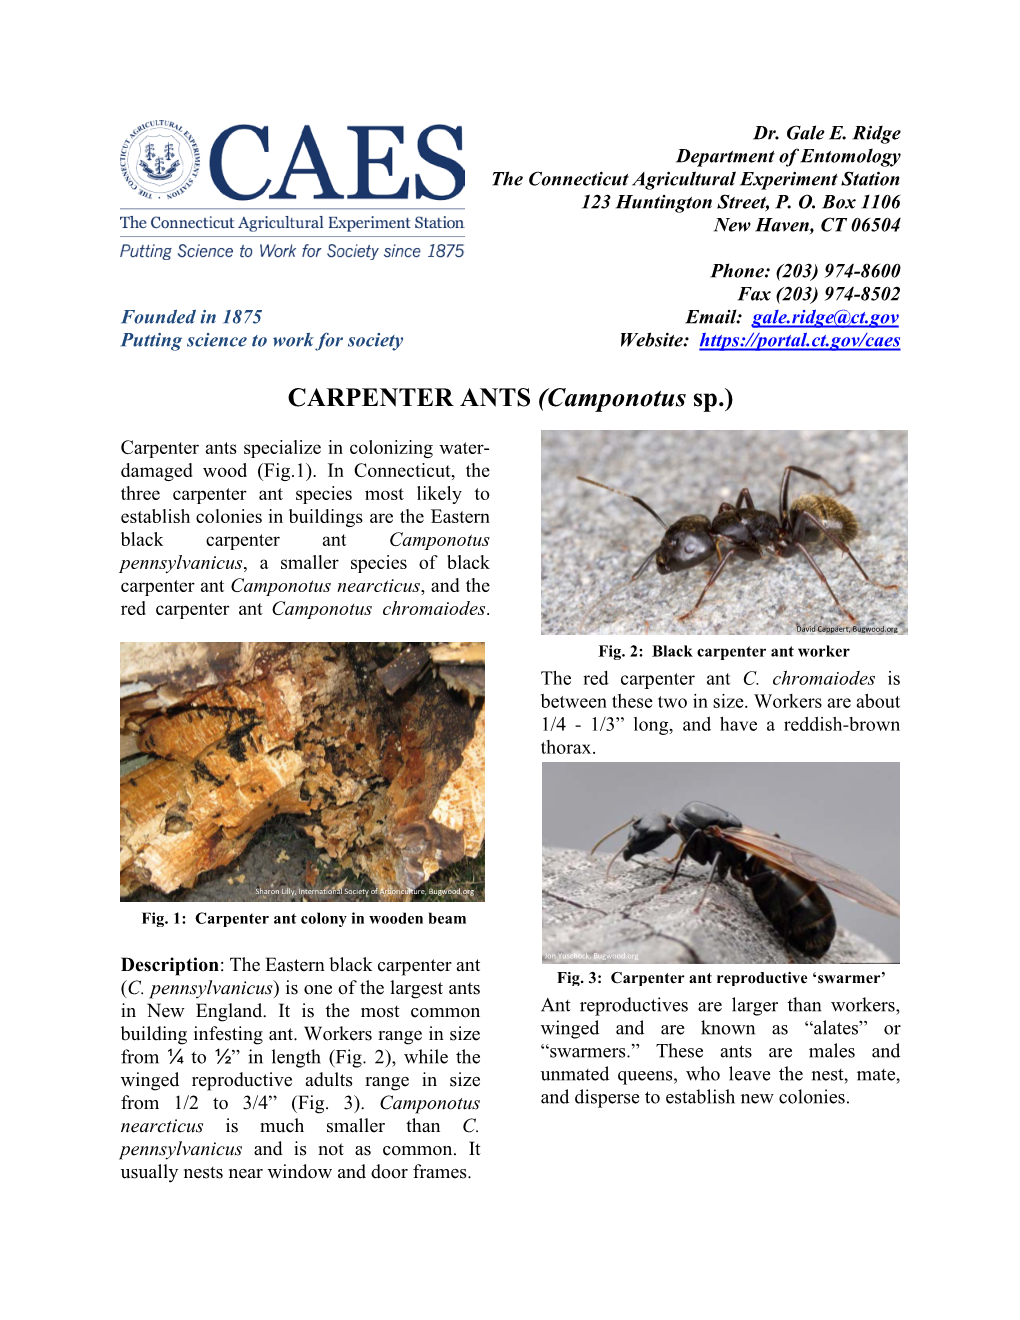 CARPENTER ANTS (Camponotus Sp.)